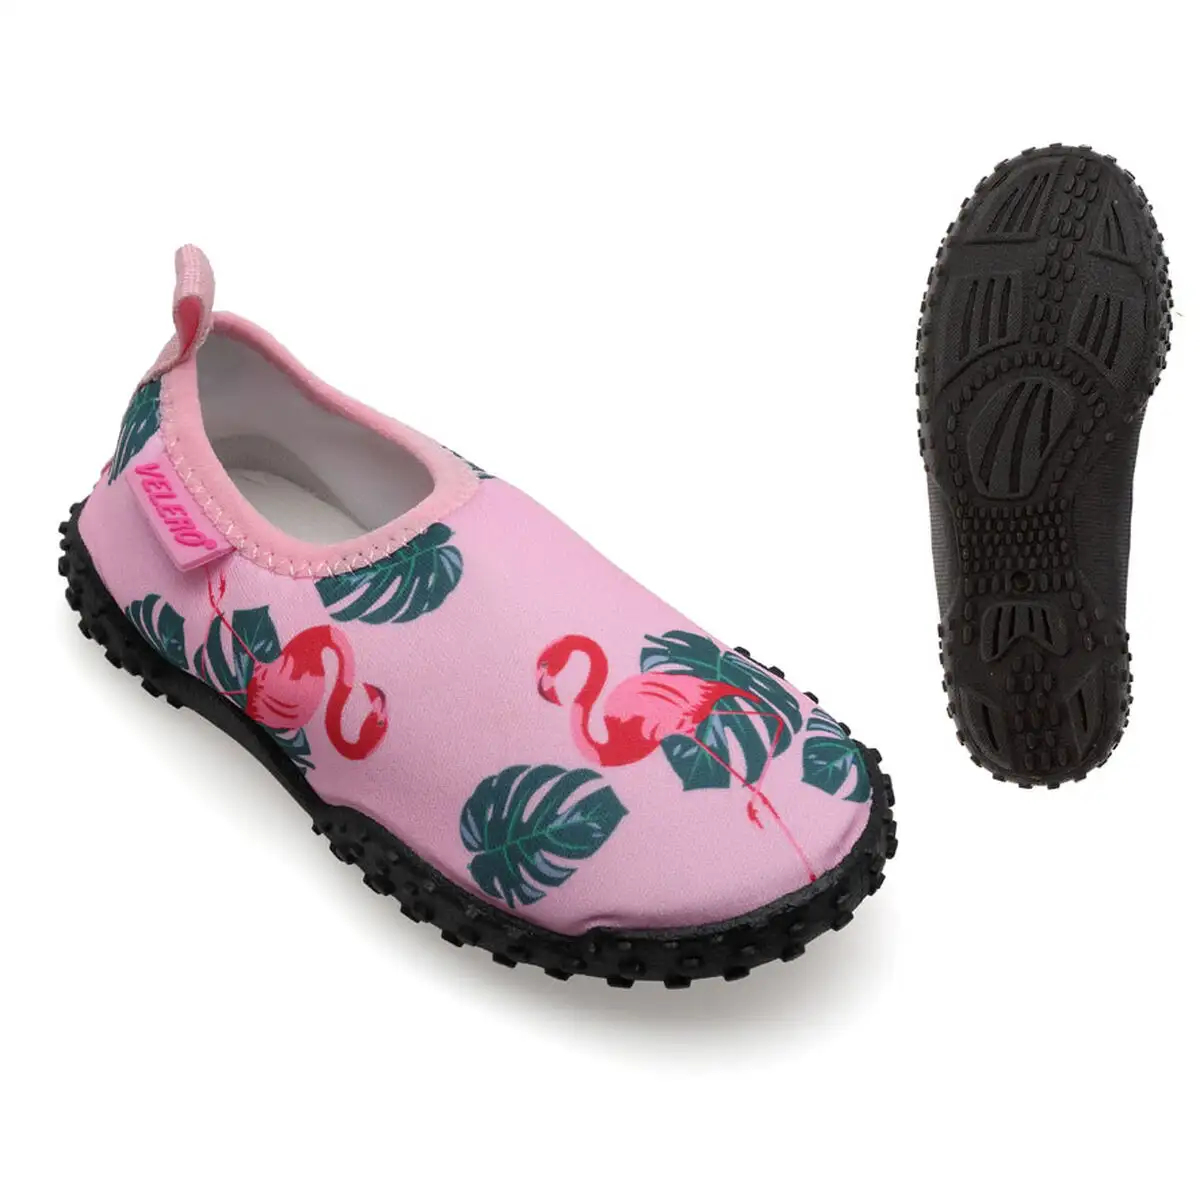 Chaussures aquatiques pour enfants flamingo rose_4221. DIAYTAR SENEGAL - L'Art de Vivre l'Excellence au Quotidien. Explorez notre gamme et choisissez des produits qui ajoutent une note de prestige à votre vie.